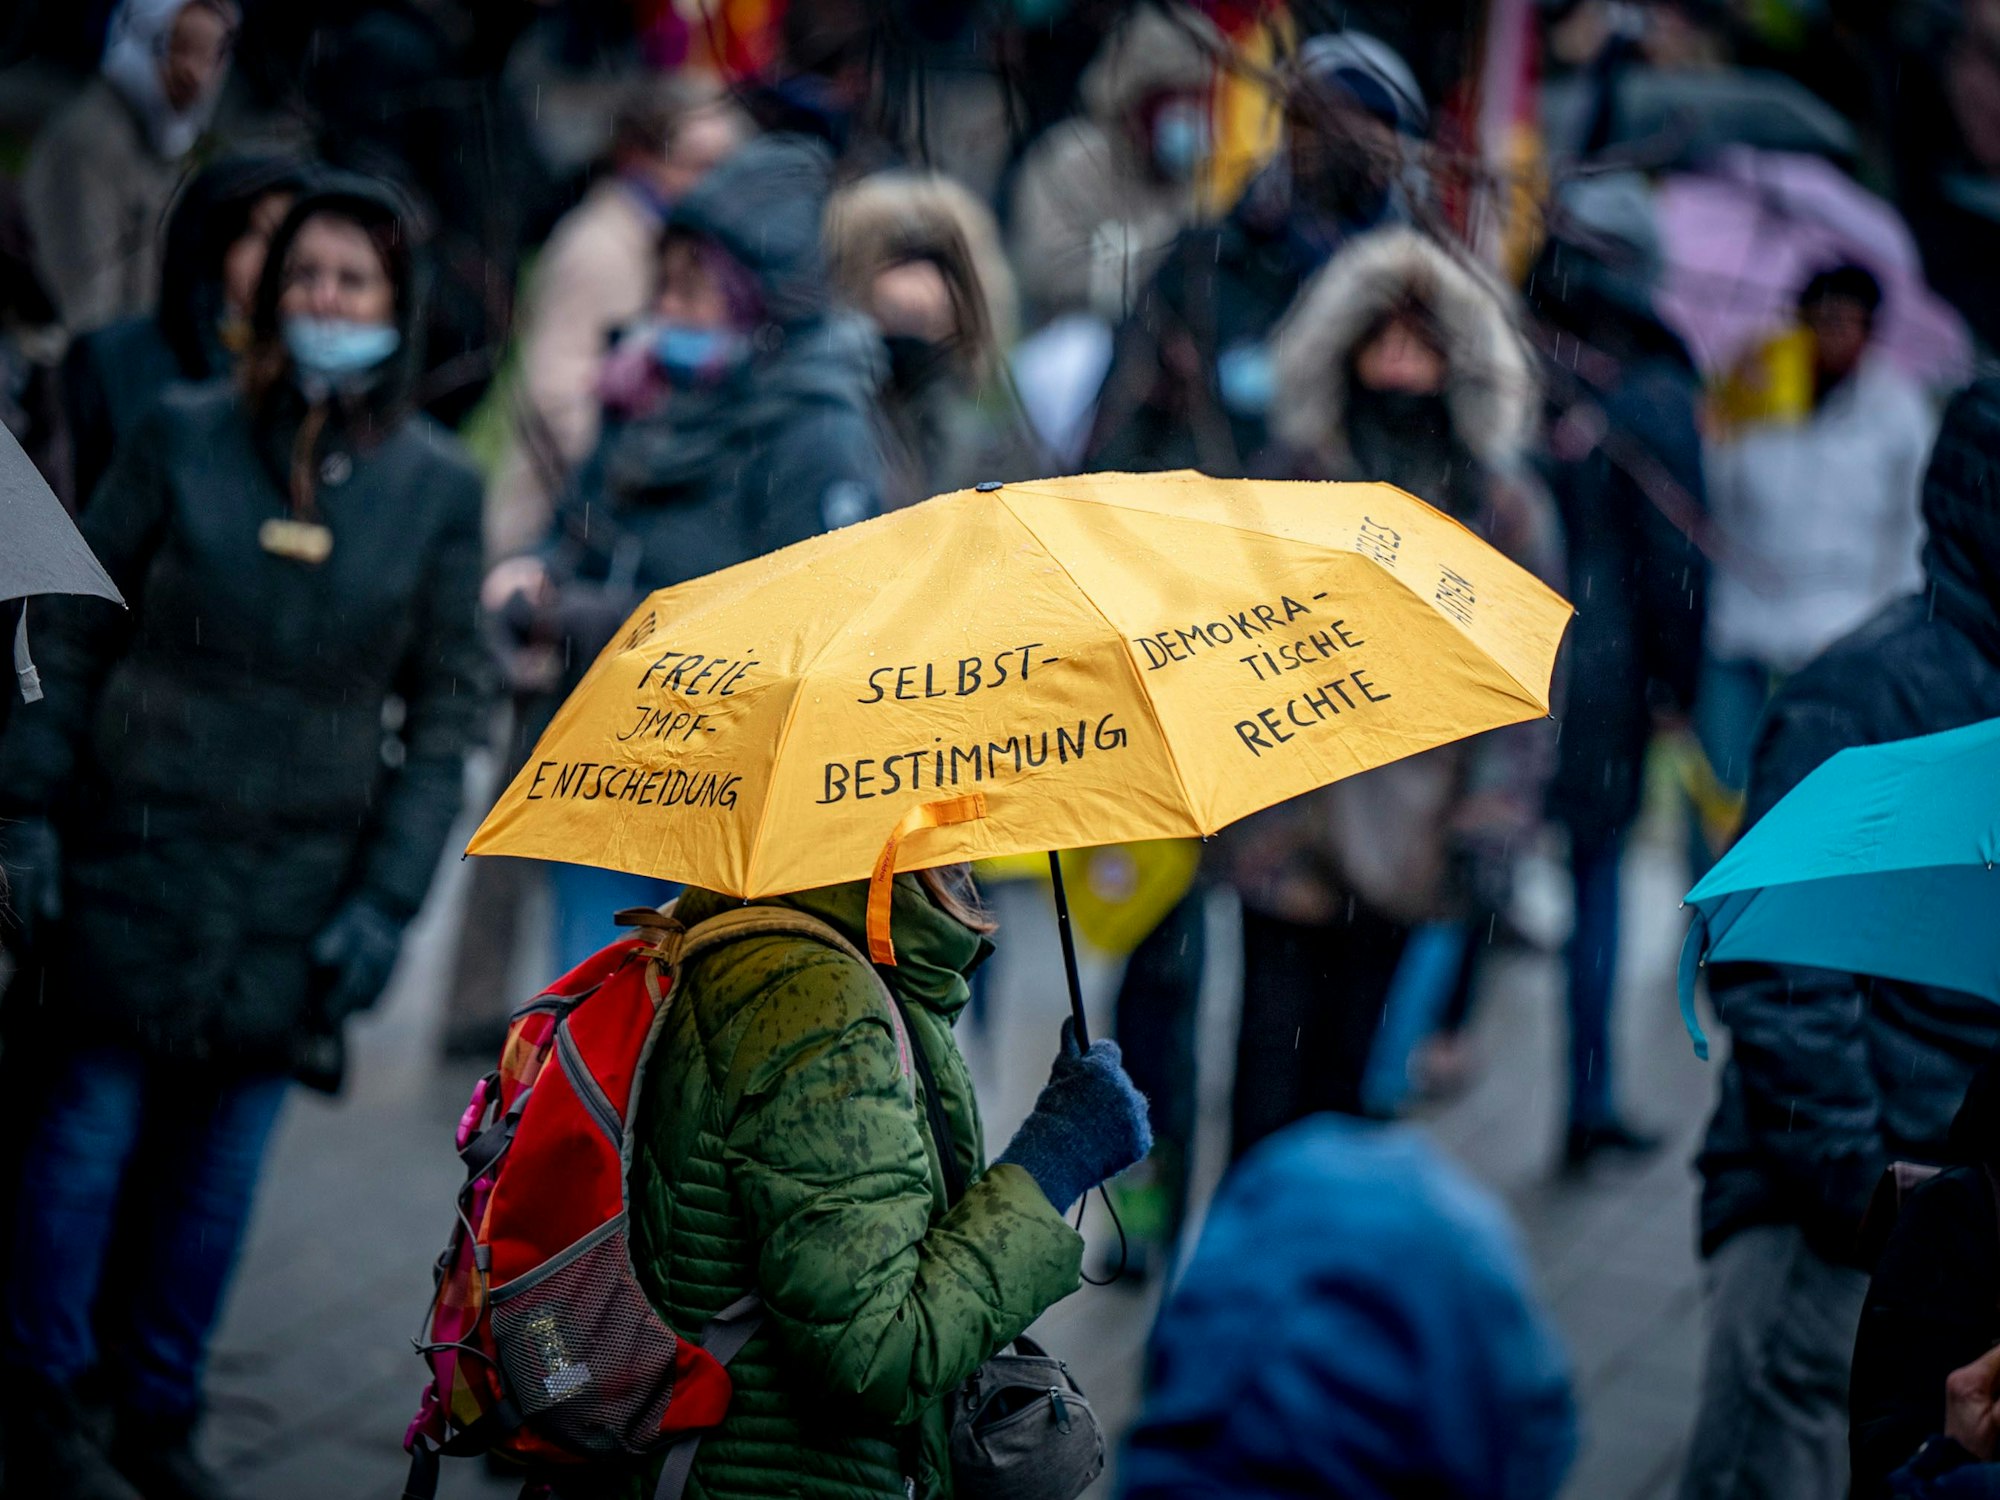 Gegner der Corona-Maßnahmen nehmen an einer Demonstration teil, eine Person hält einen Regenschirm, auf dem u.a. „Selbstbestimmung“ und „Demokratische Rechte“ steht.